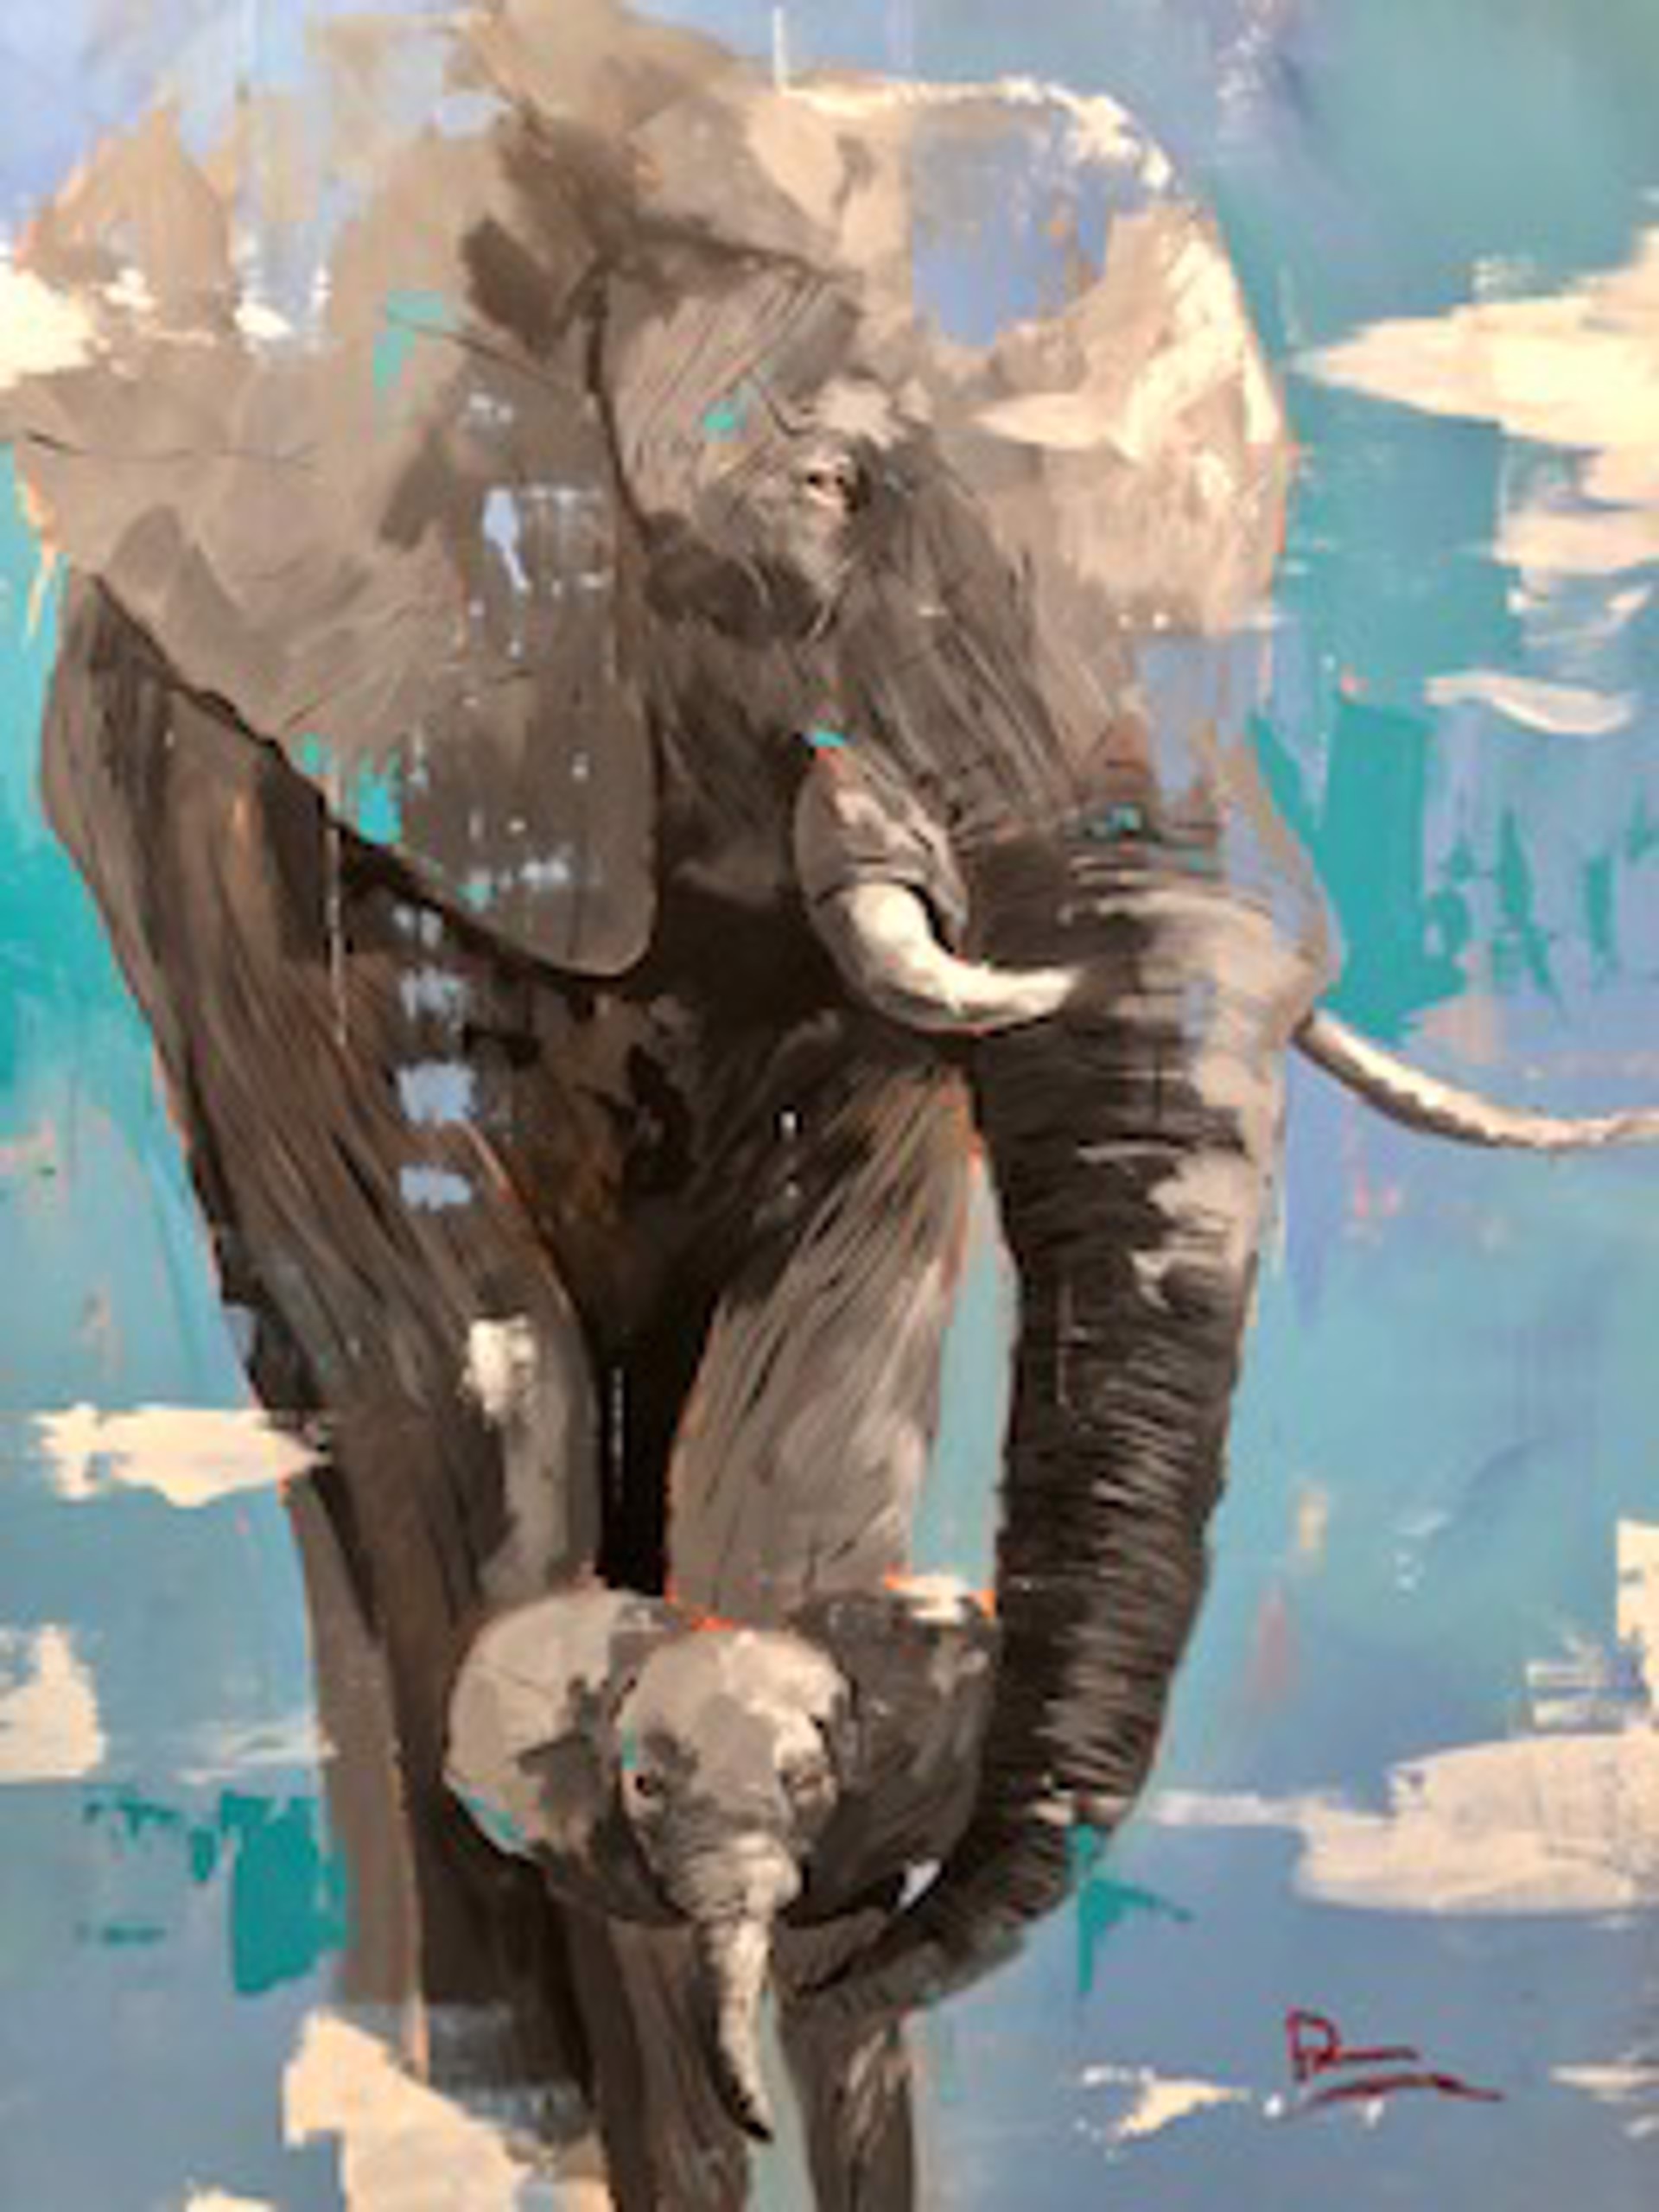 Elephant and Cub by Dominic Mattioli